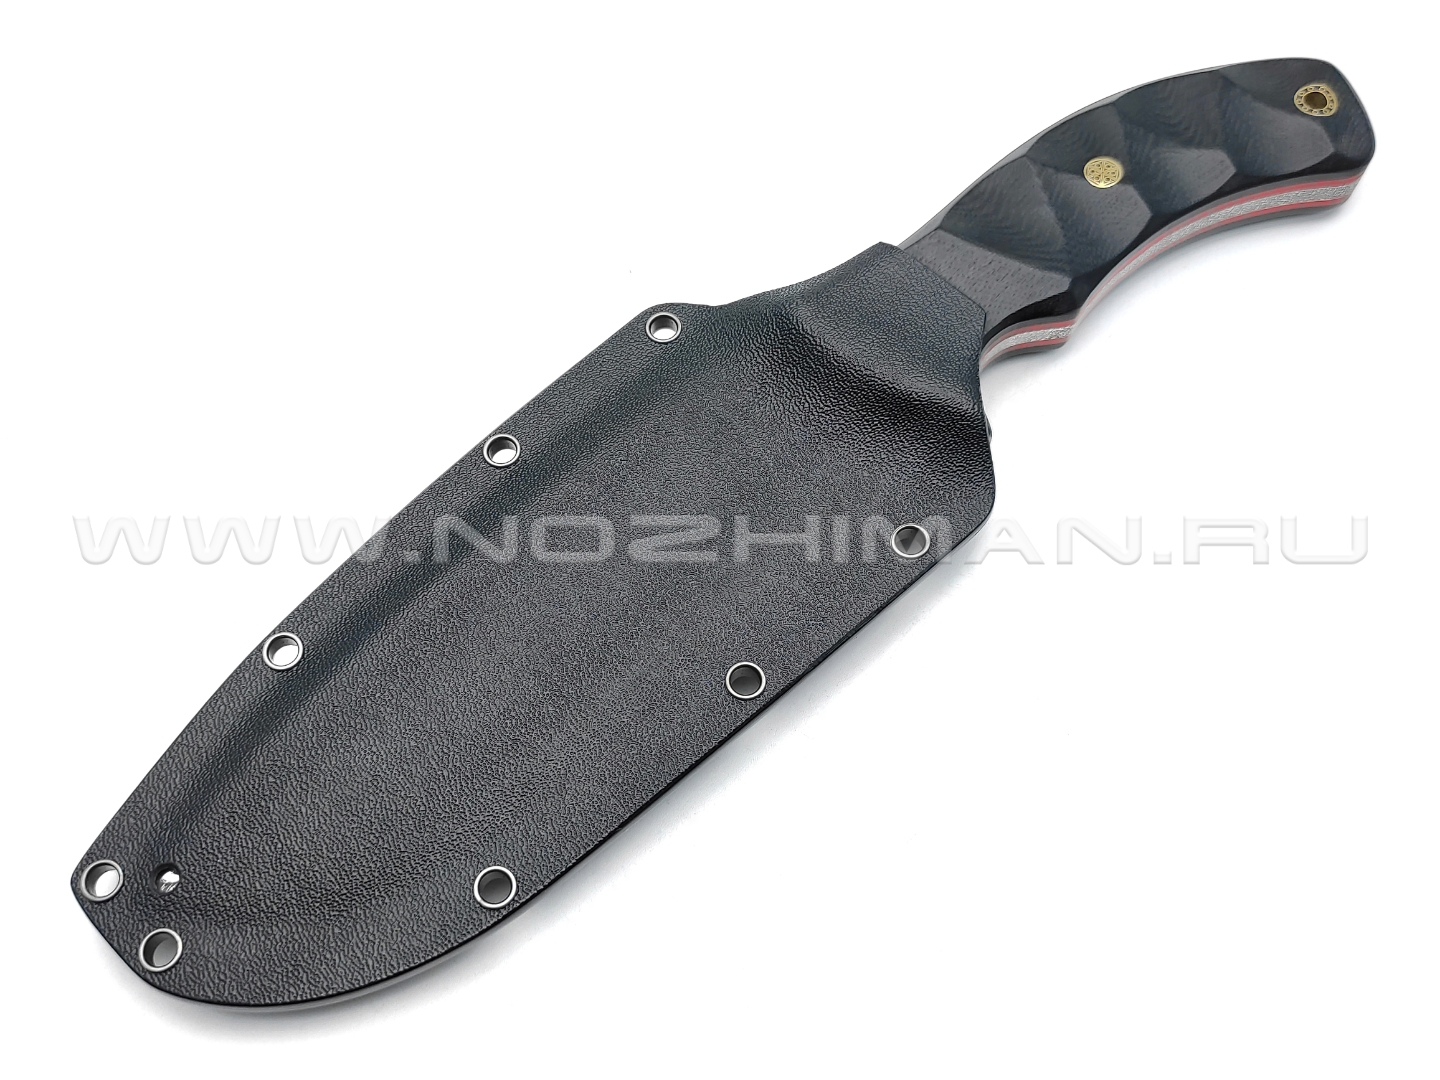 Волчий Век нож Команданте Custom сталь Niolox WA, рукоять G10 black & red